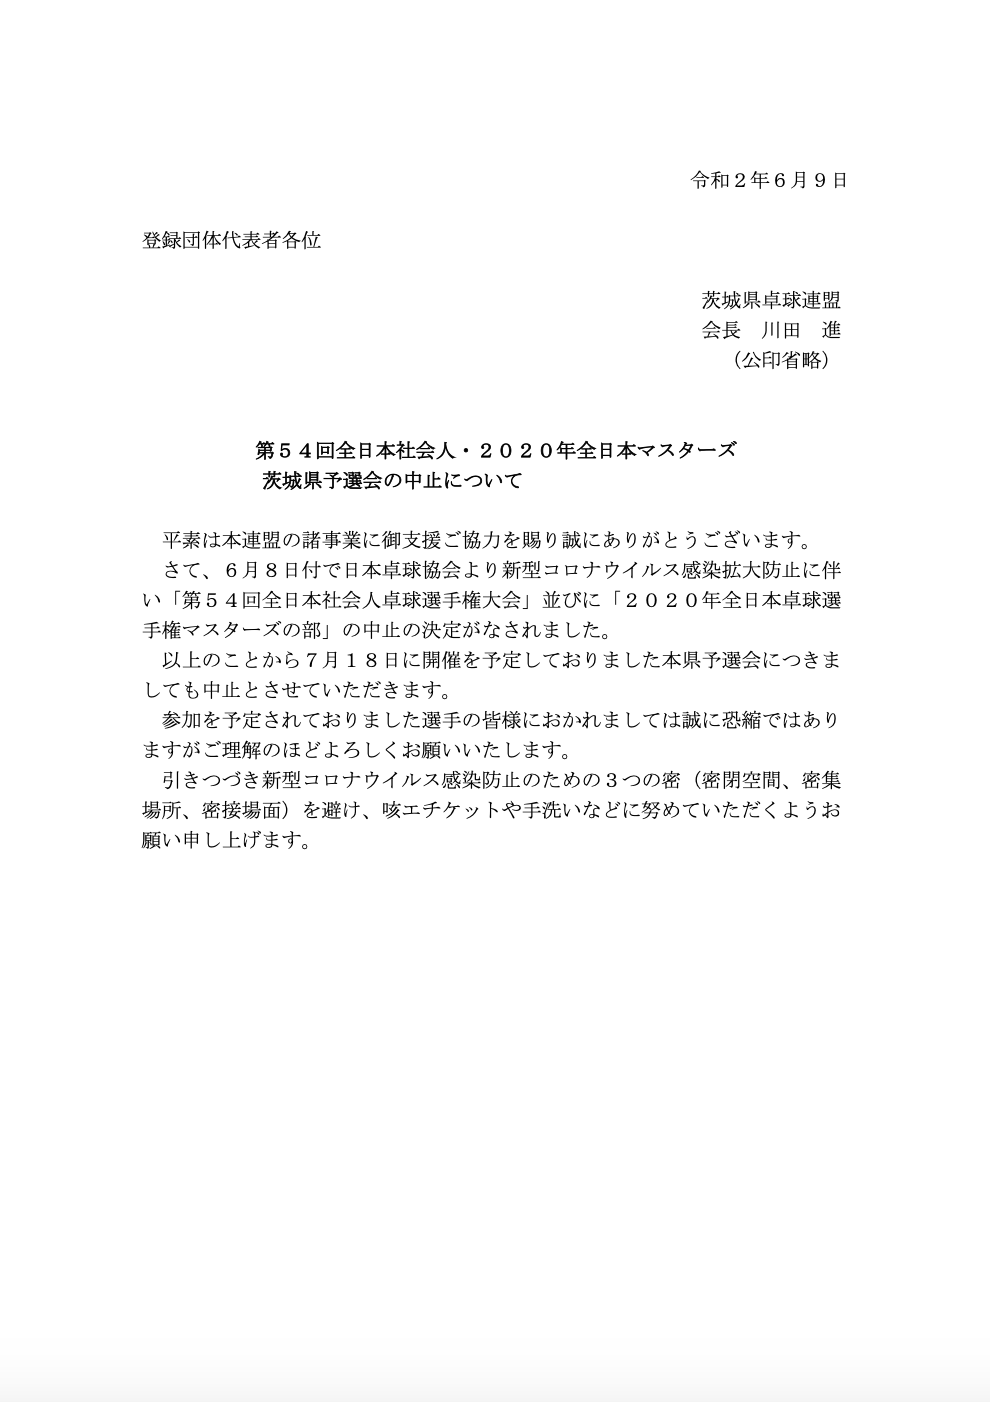 全日本社会人・マスターズ予選会中止のお知らせ